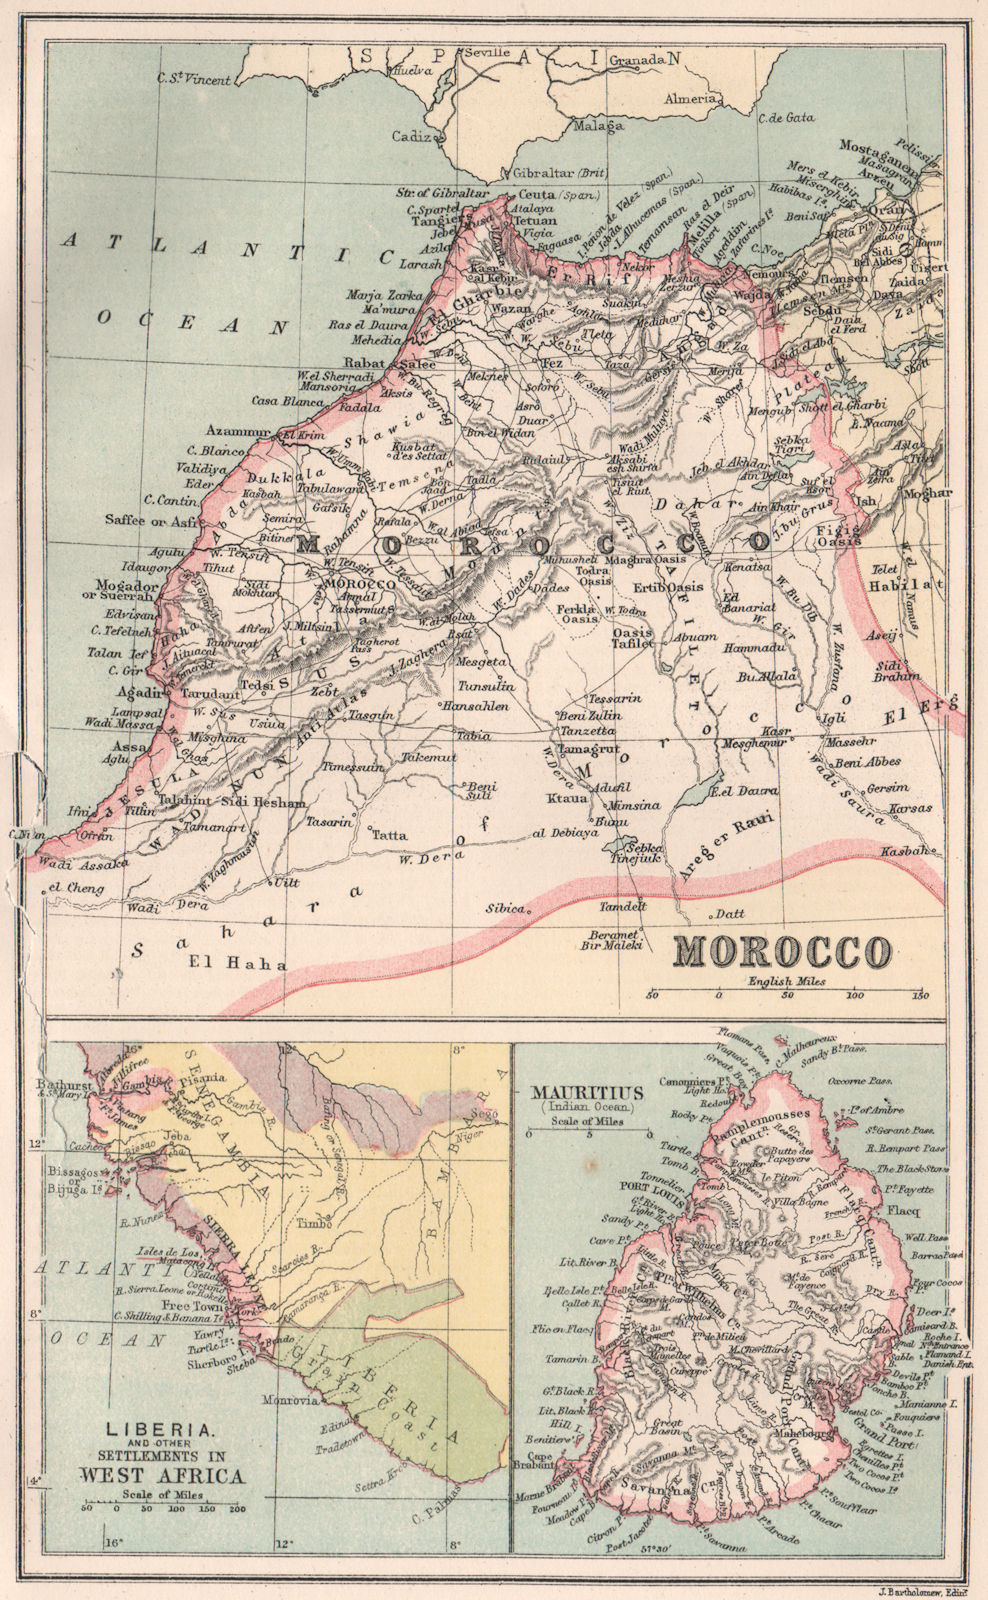 Associate Product MOROCCO LIBERIA & MAURITIUS. Sierra Leone. BARTHOLOMEW 1886 old antique map